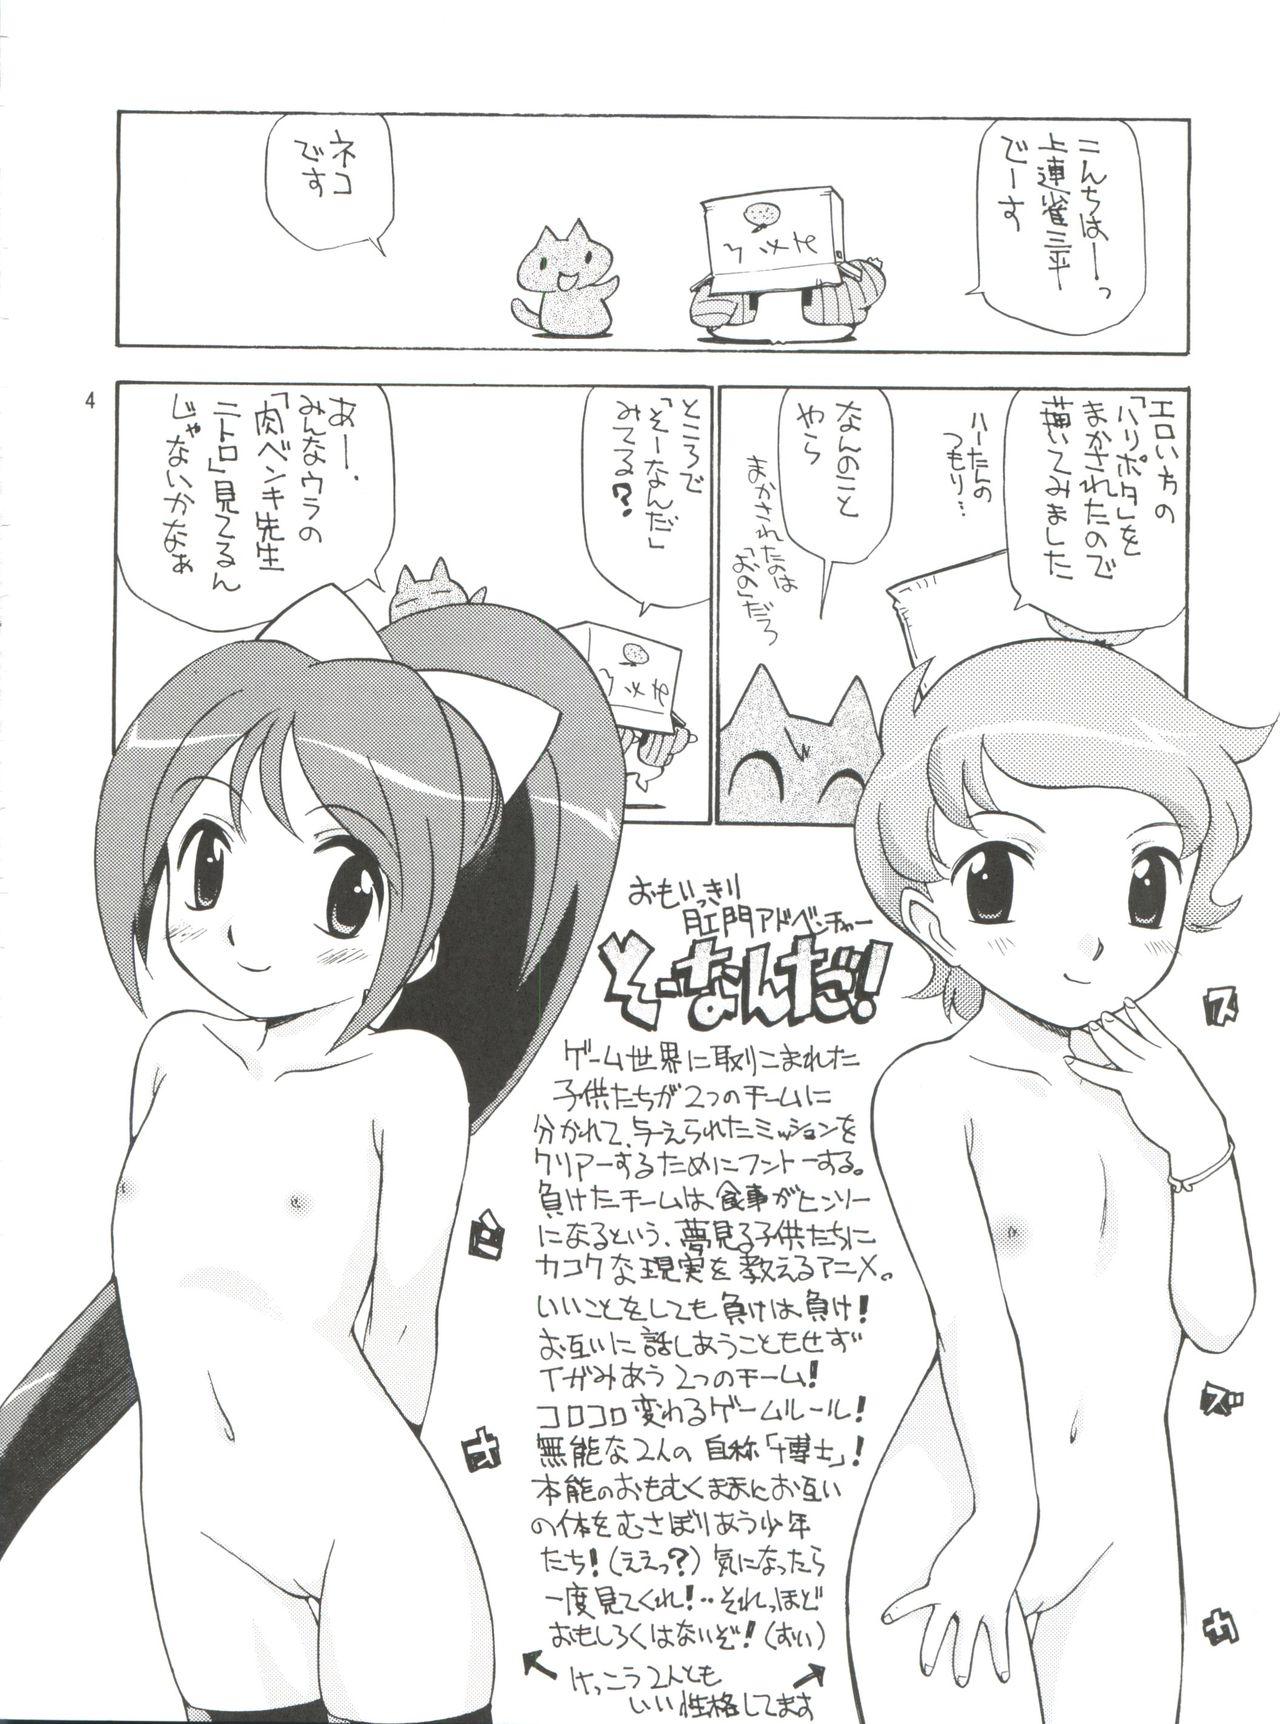 Rabuda Omoikikiri Chijo Adventure - Tokyo mew mew Omoikkiri kagaku adventure sou nanda Bomberman jetters Safado - Page 4